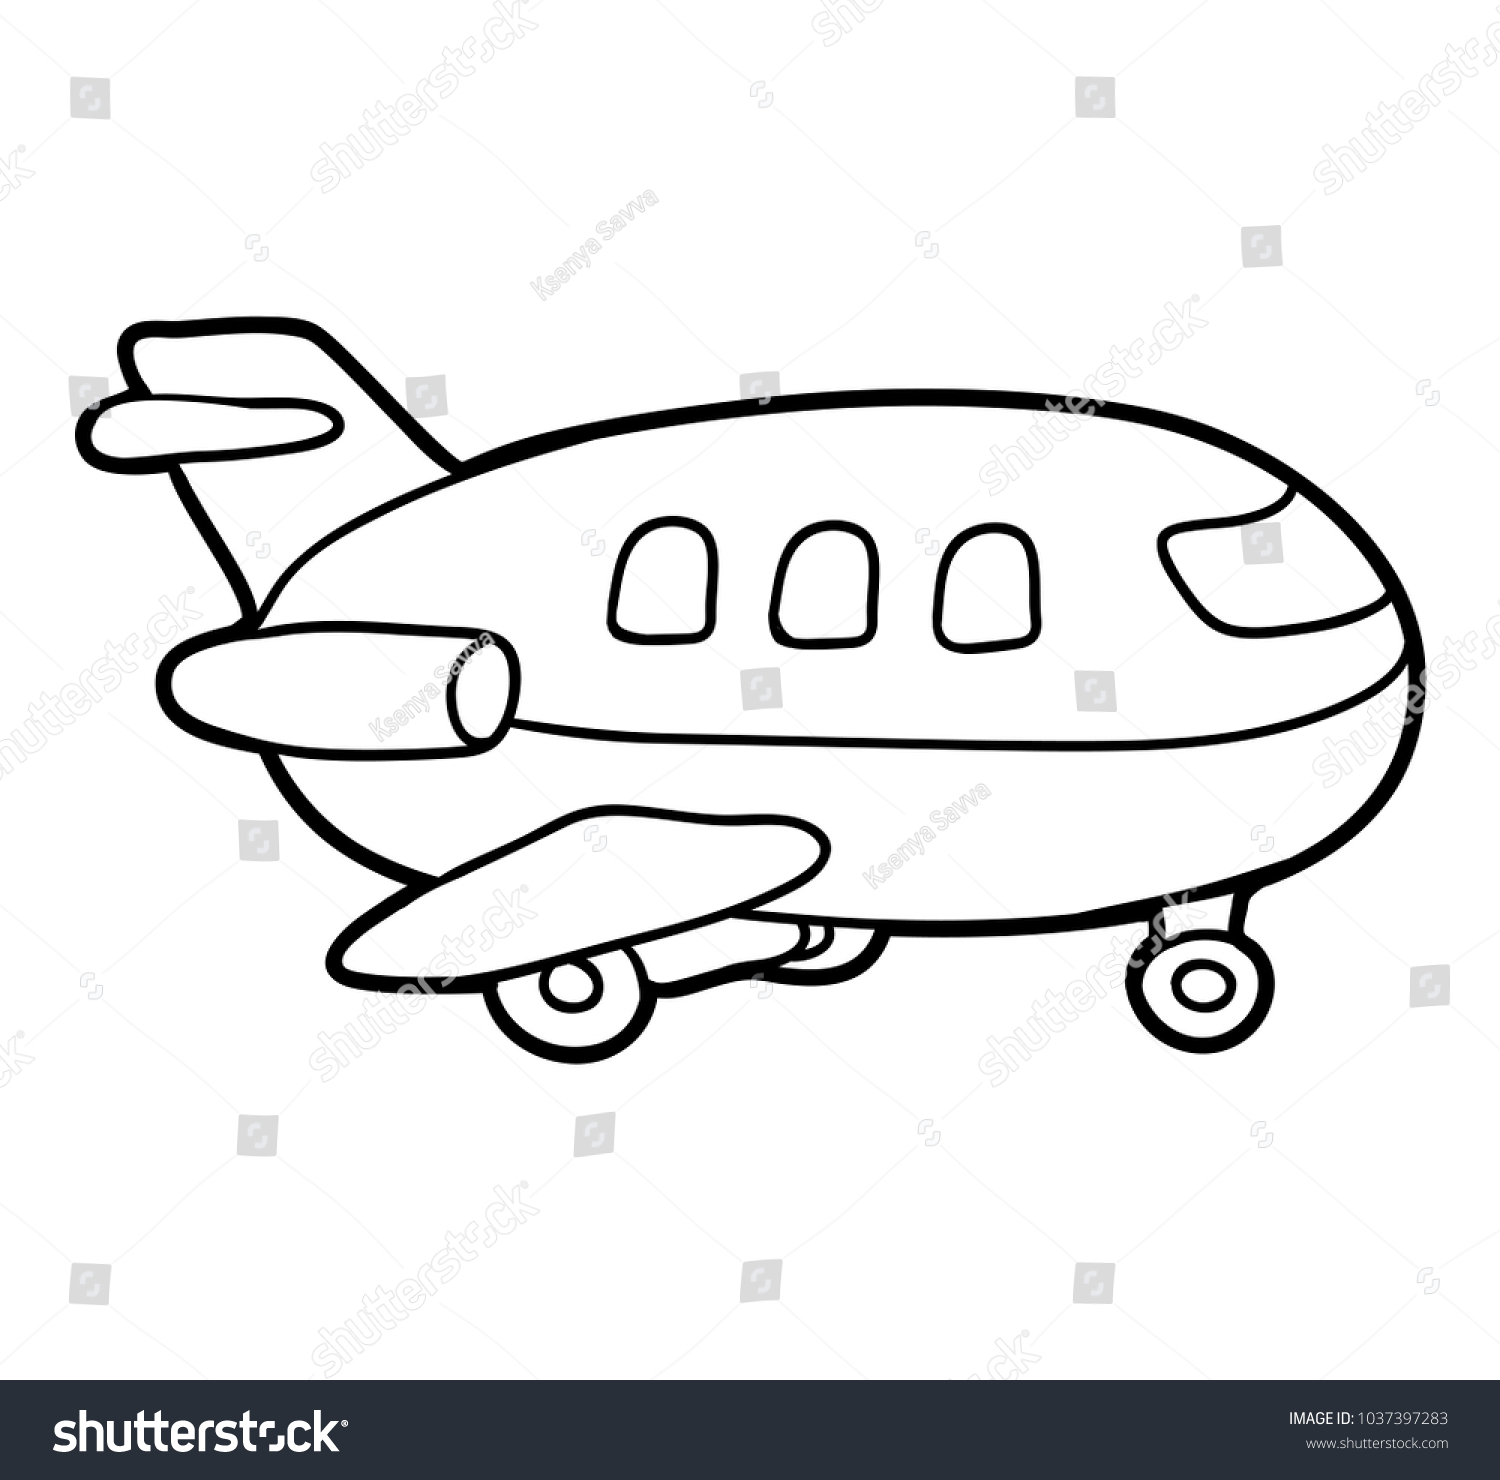 Картинки транспорт для детей самолет для раскрашивания